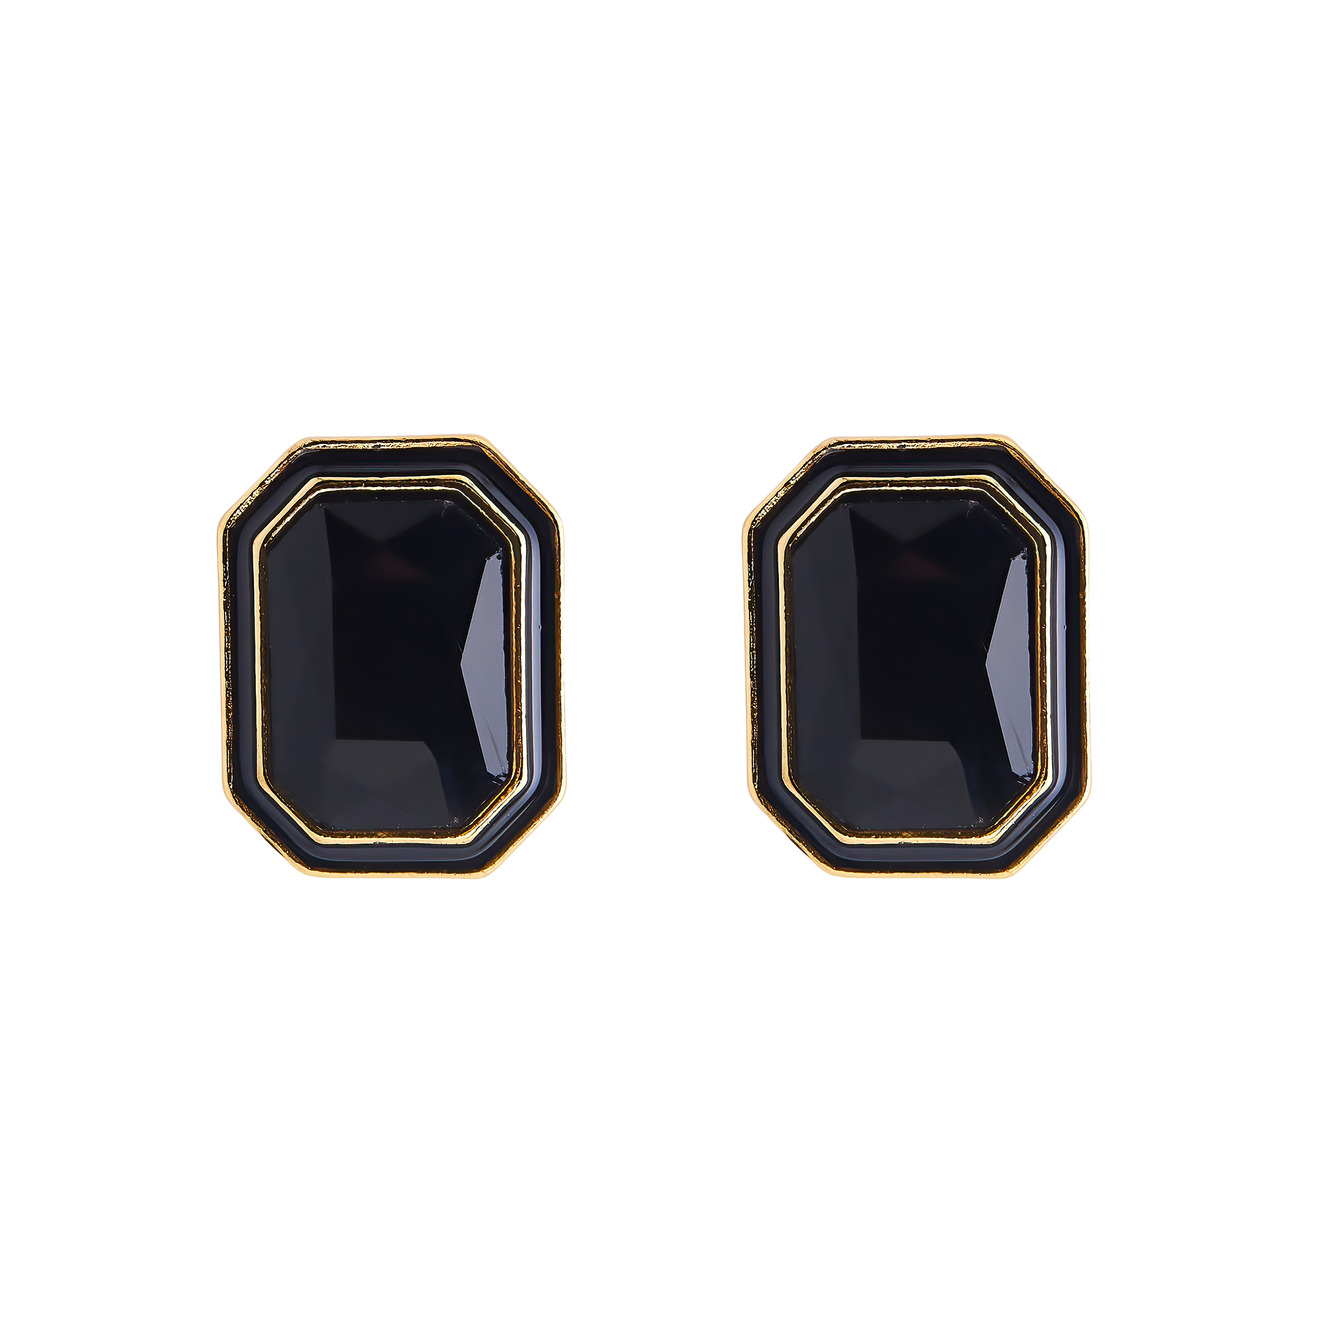 herald percy серебристые серьги с черными кристаллами и белой эмалью Herald Percy Крупные золотистые серьги с черными кристаллами и черной эмалью